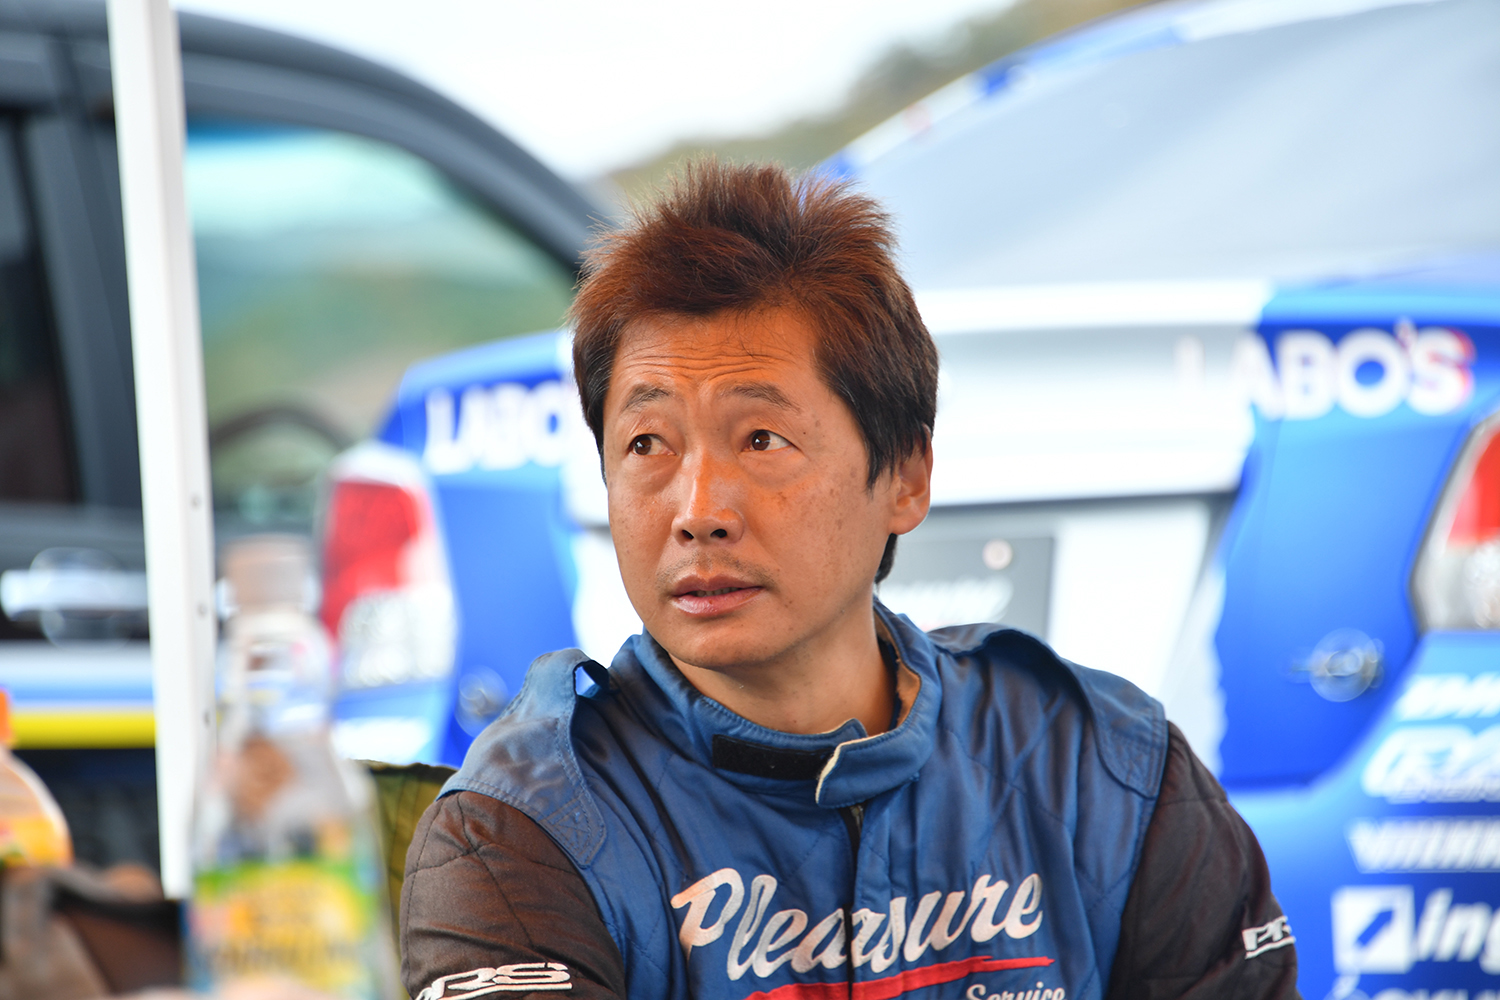 2022年全日本ダートトライアル選手権に参戦したGJ3型インプレッサの走行シーン